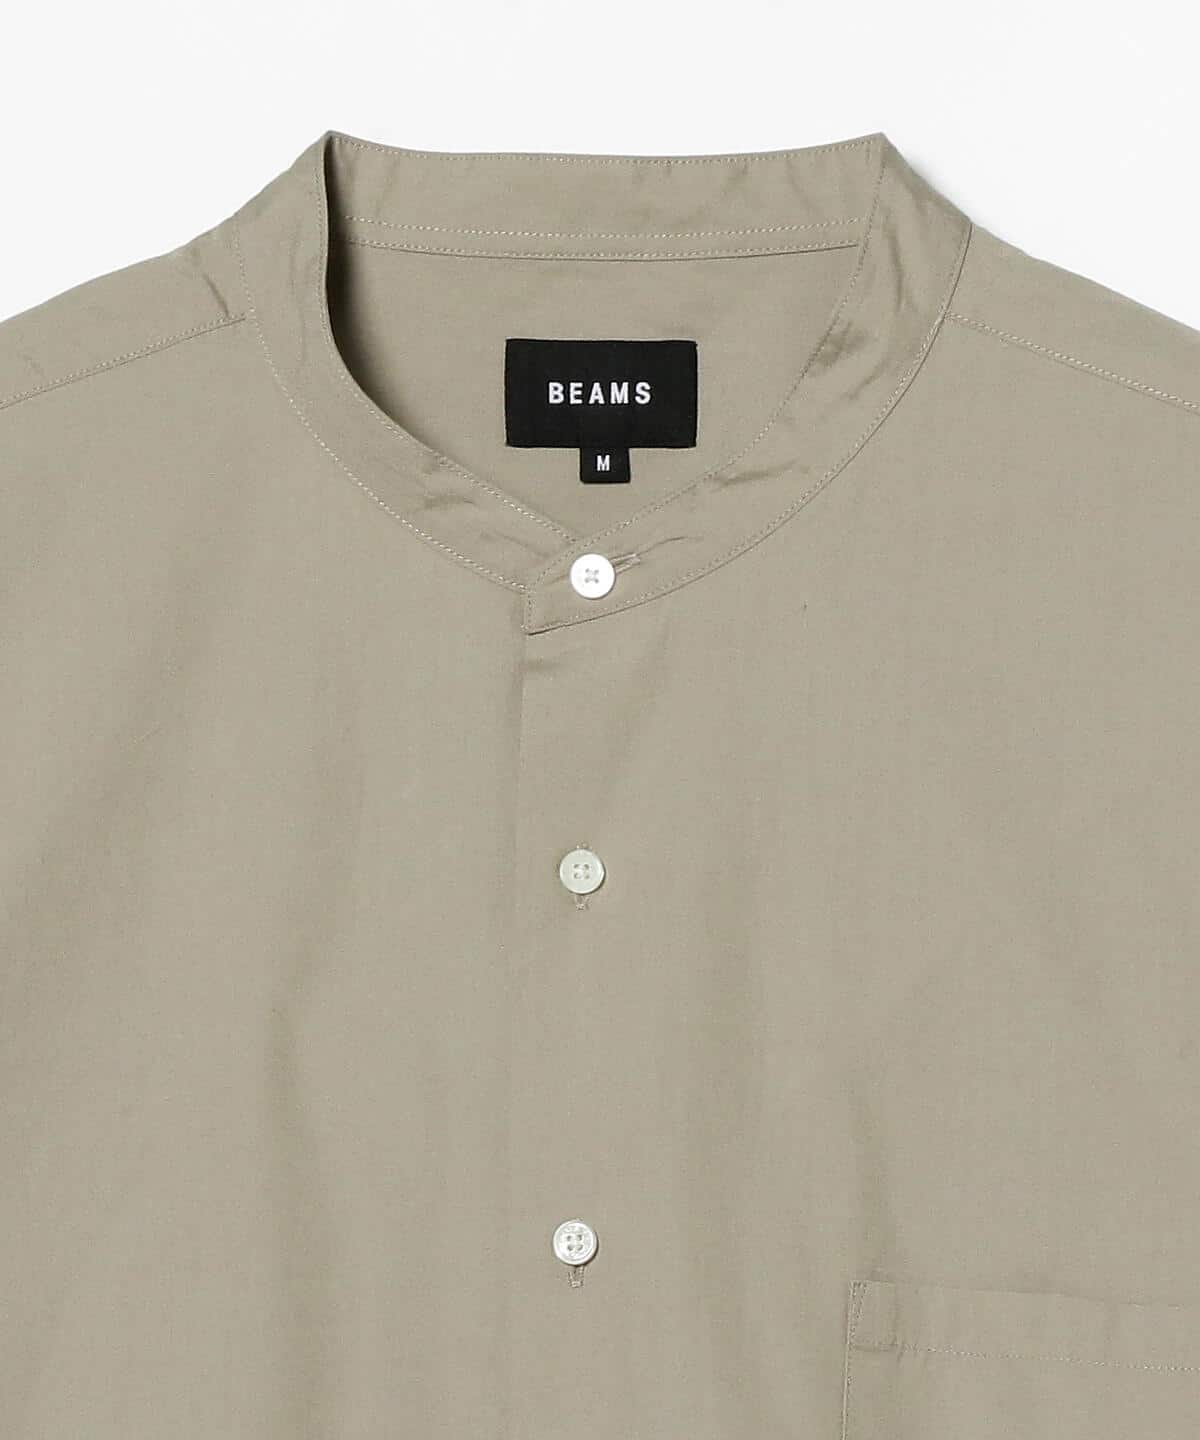 【OLIVE】BEAMS / バンドカラー イージー シャツ